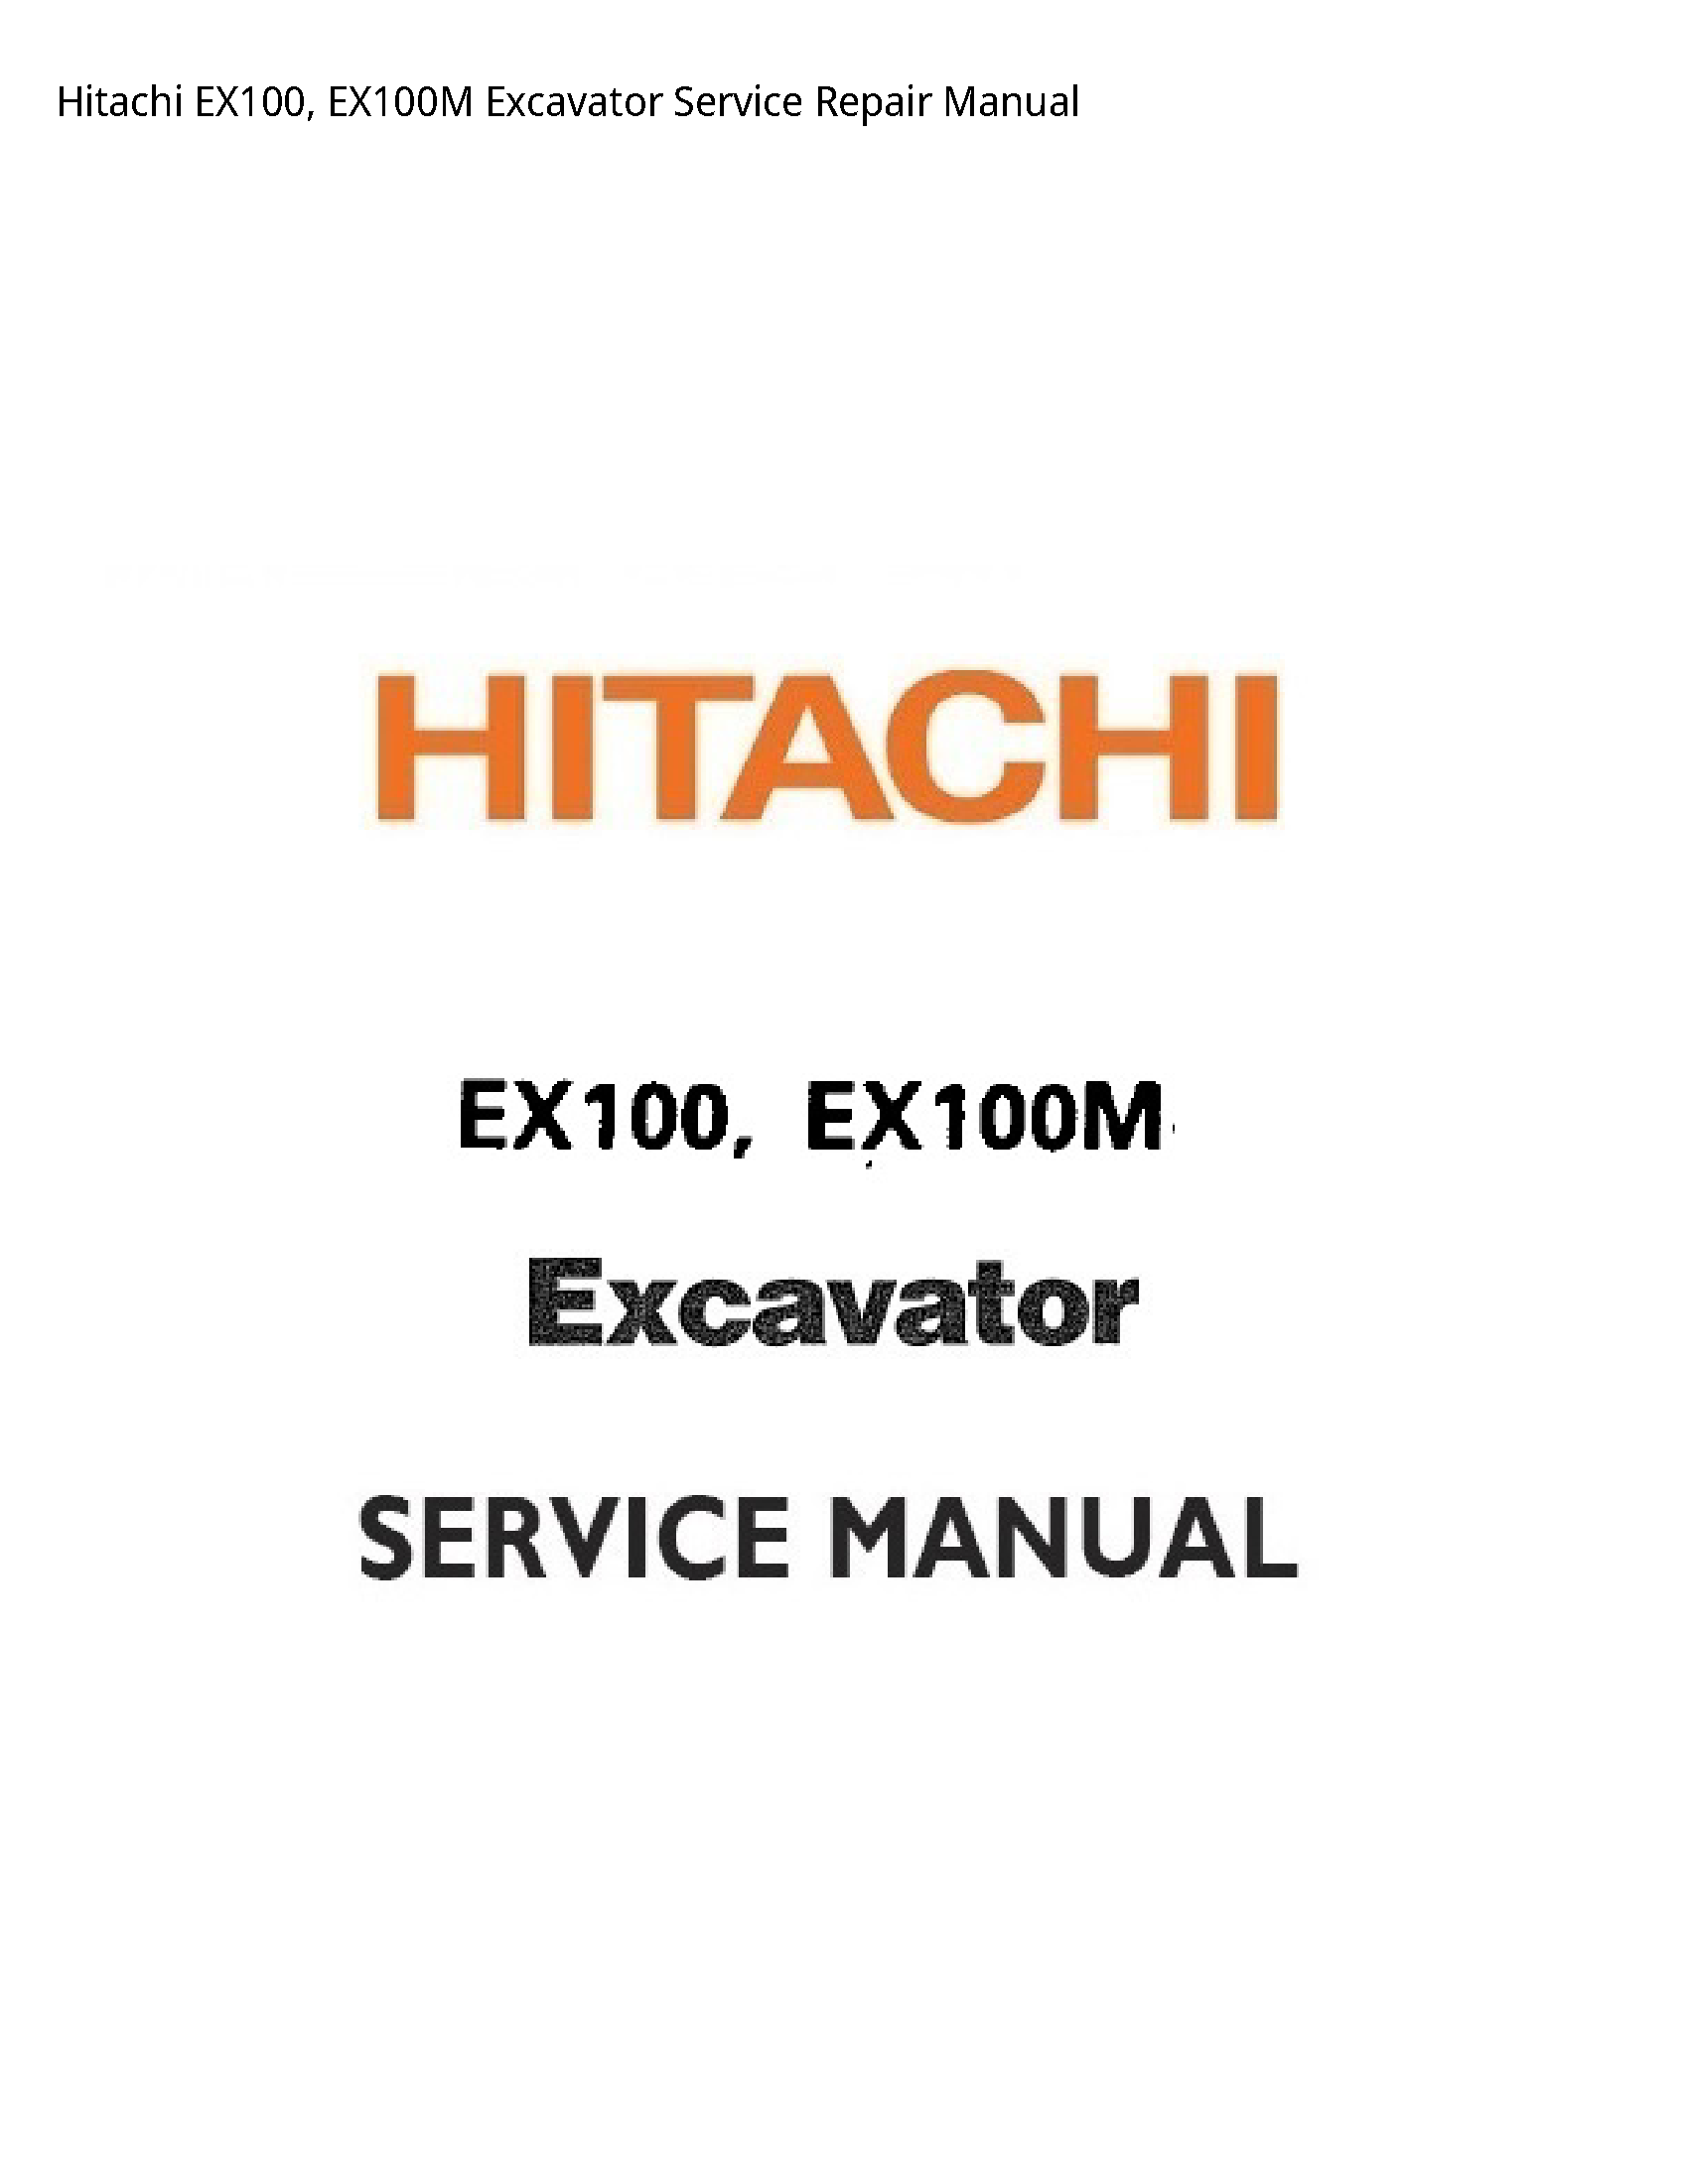 Hitachi EX100 Excavator manual